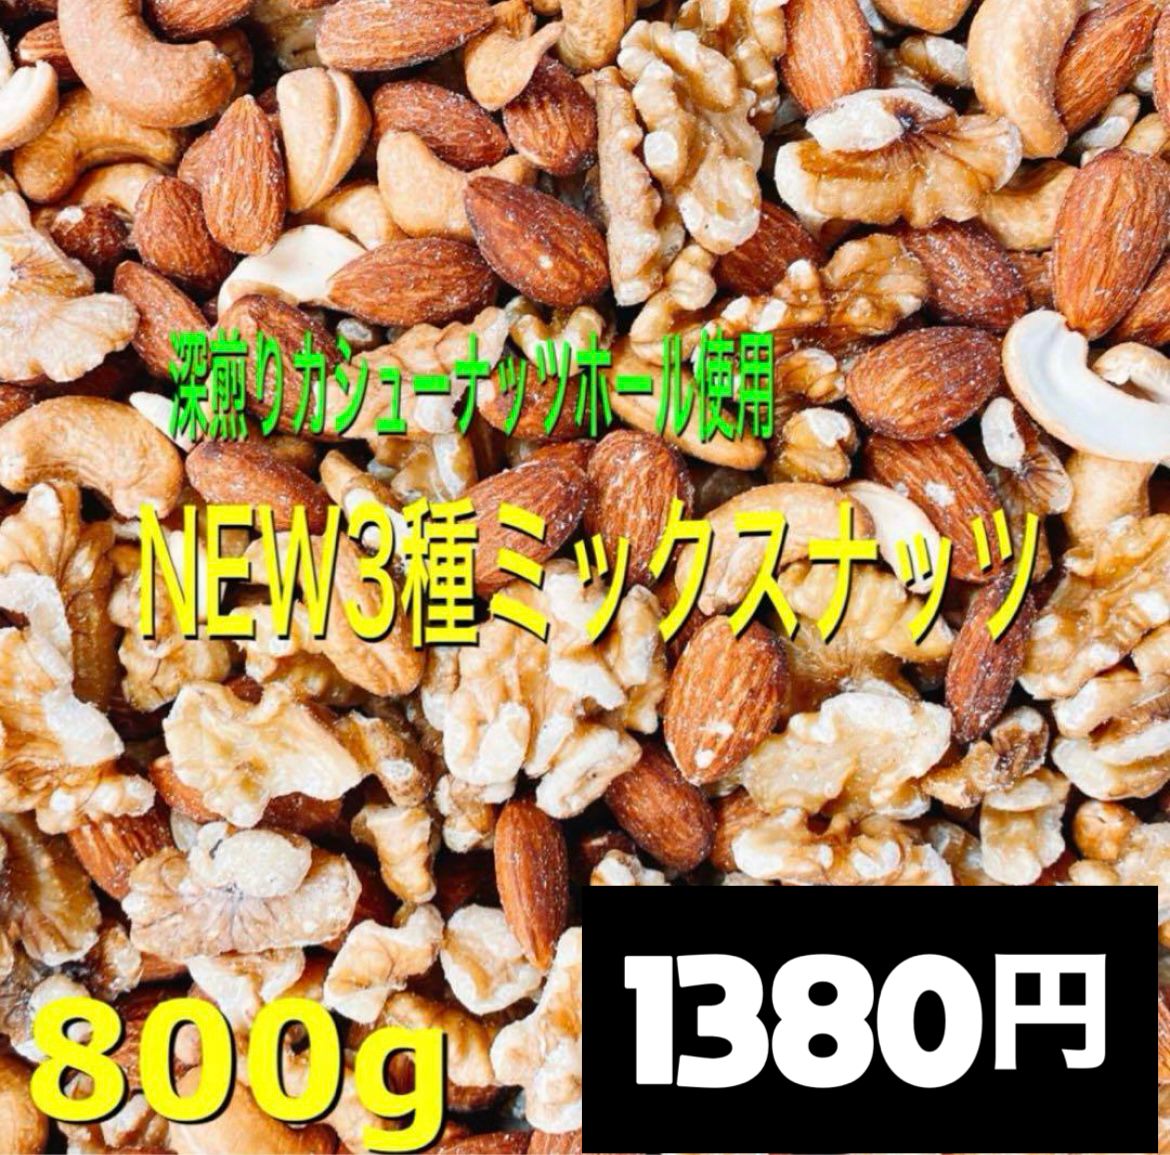 ❤️☘️ NEW3種ミックスナッツ800g ☘️❤️素焼きアーモンド クルミ